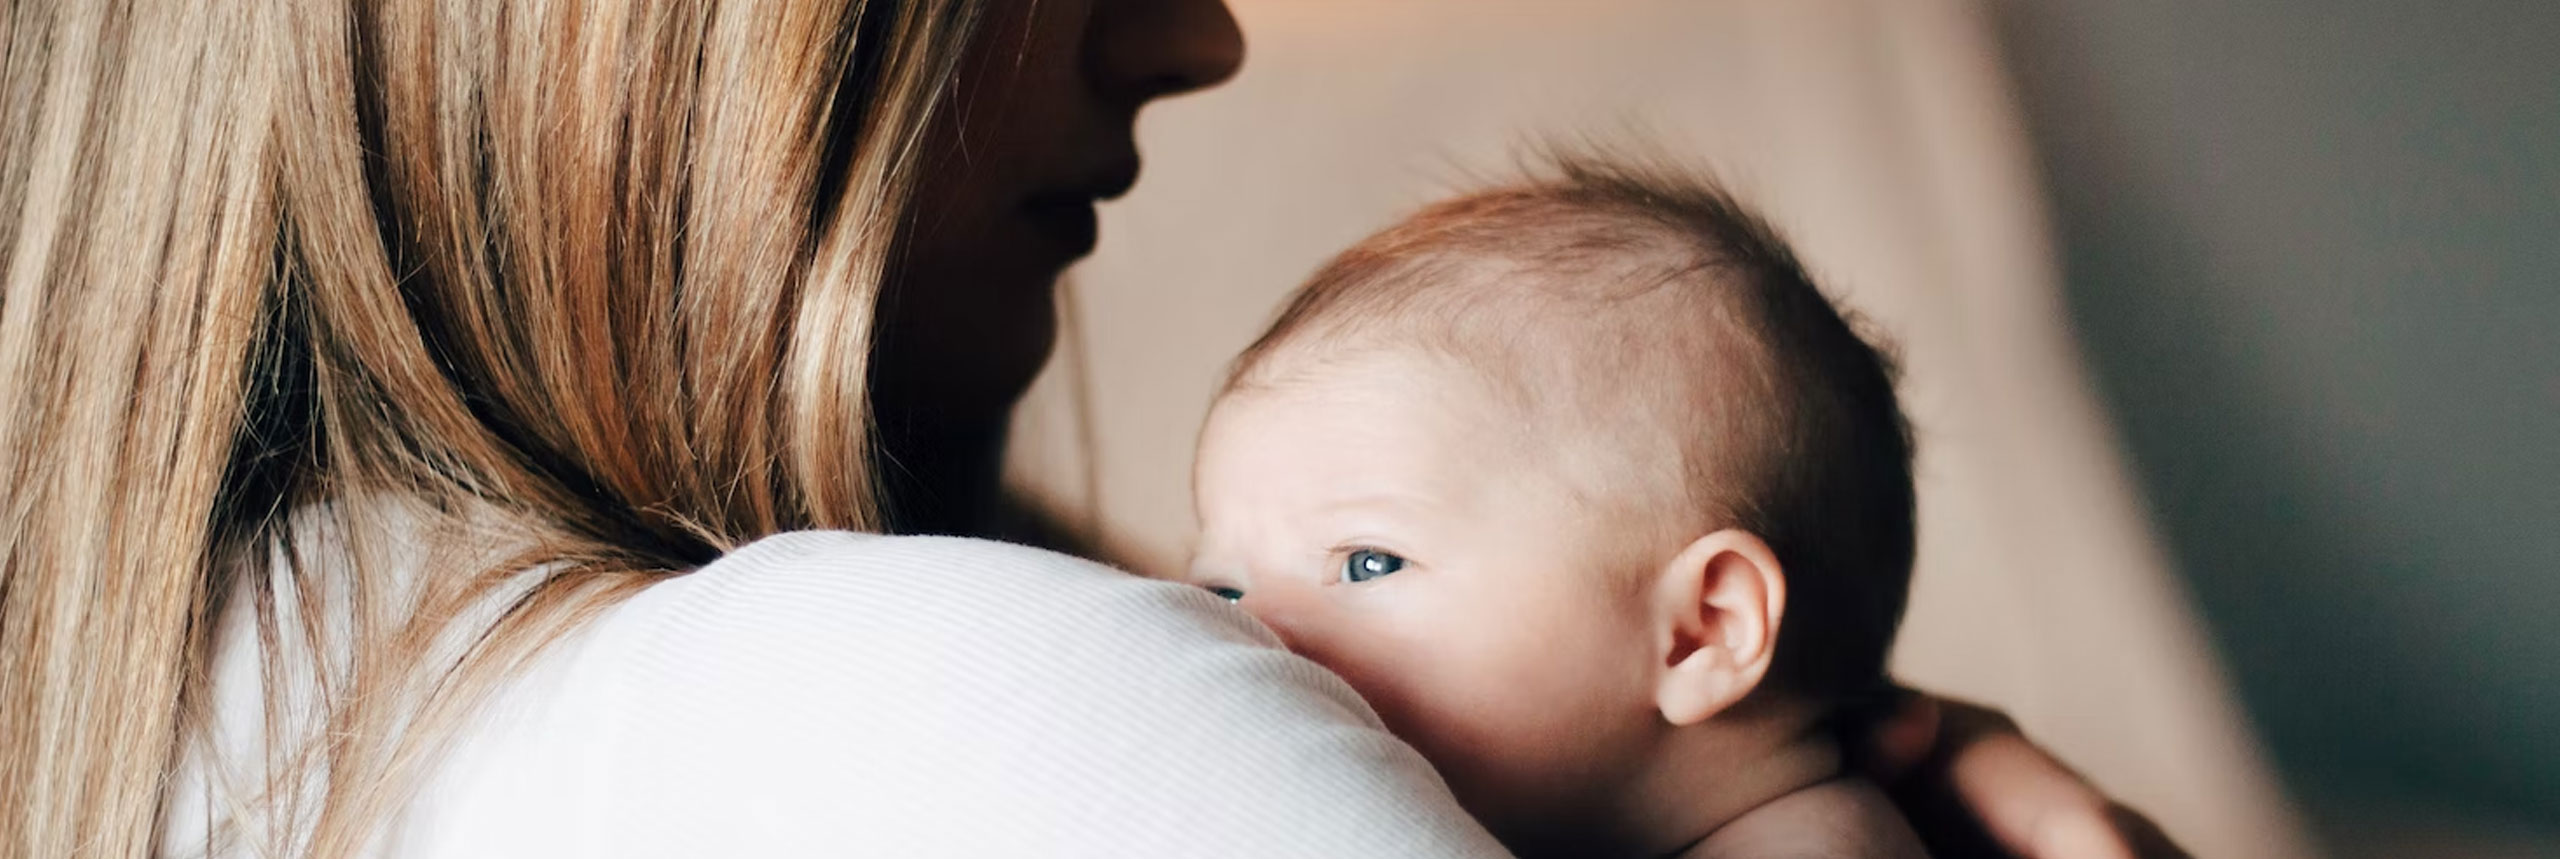 Cadeau de naissance : 15 idées sympas pour une jeune maman